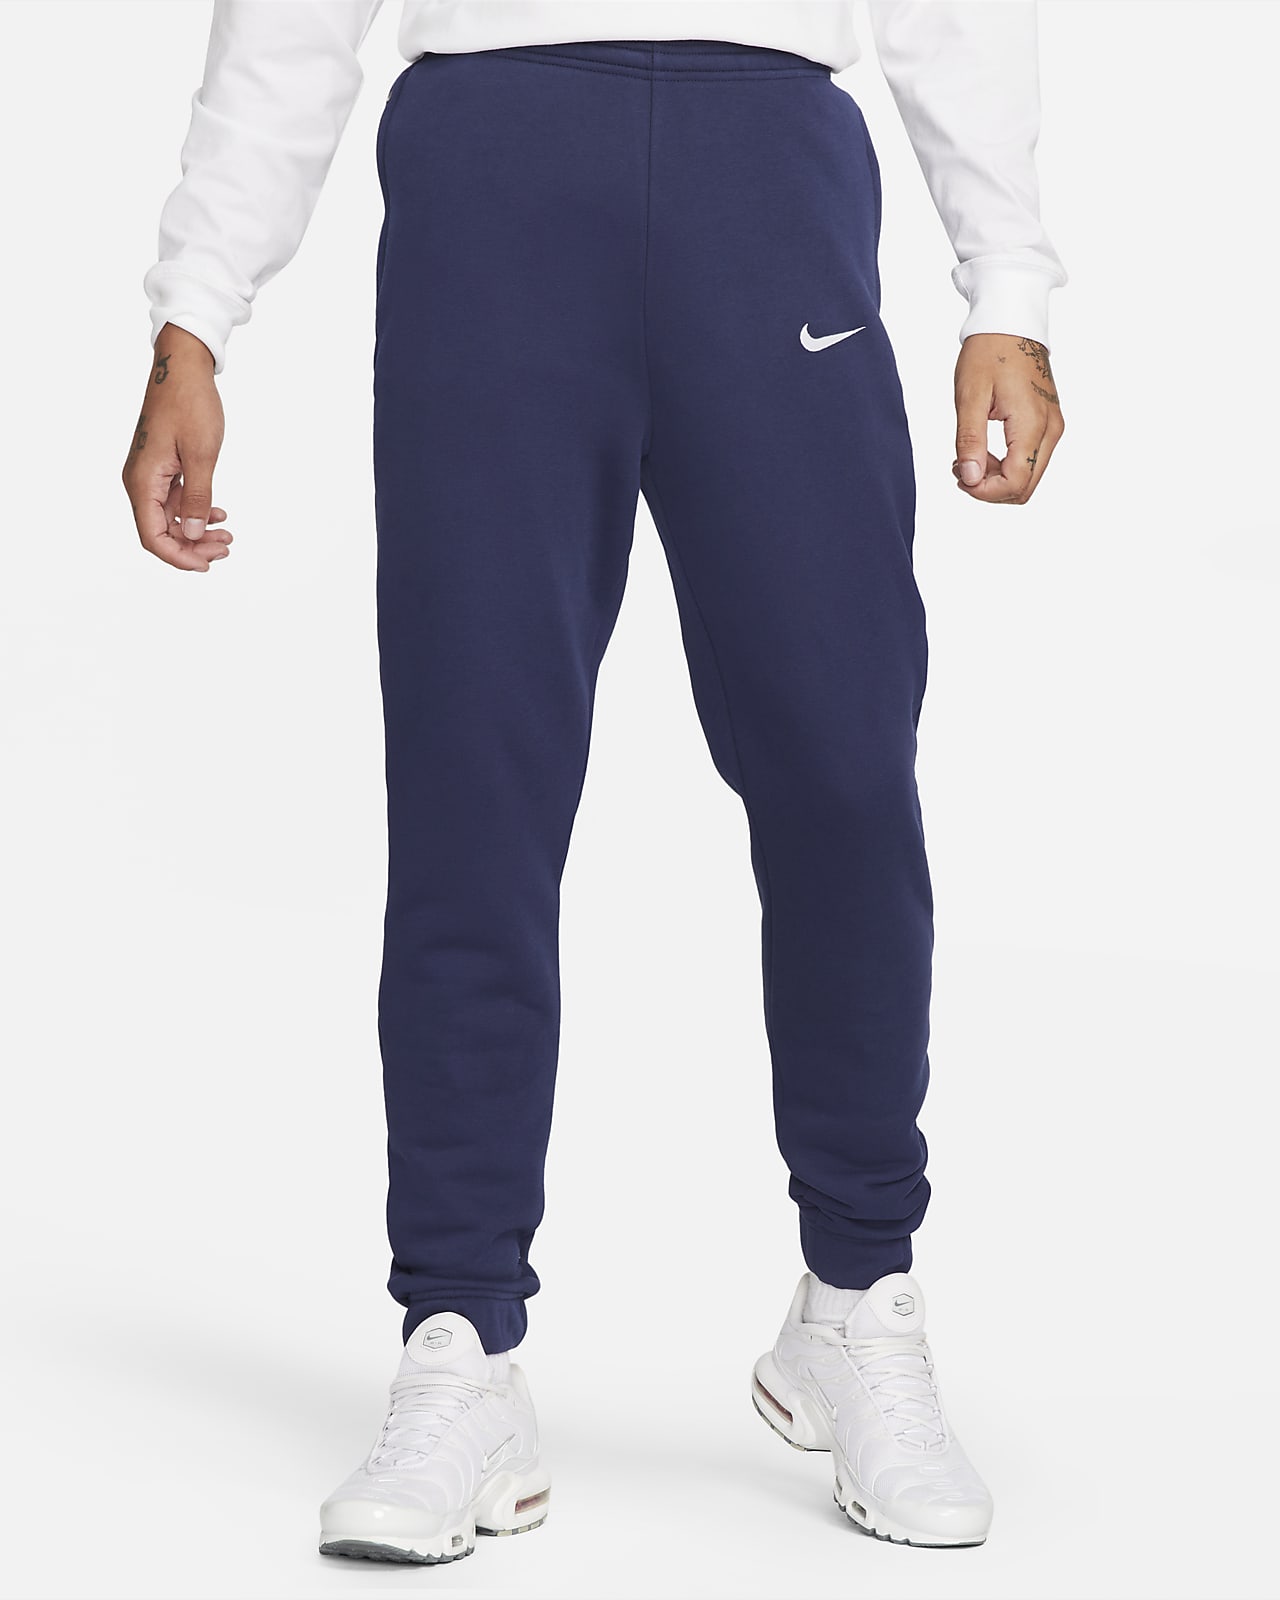 FFF Men's Nike Fleece Football Pants